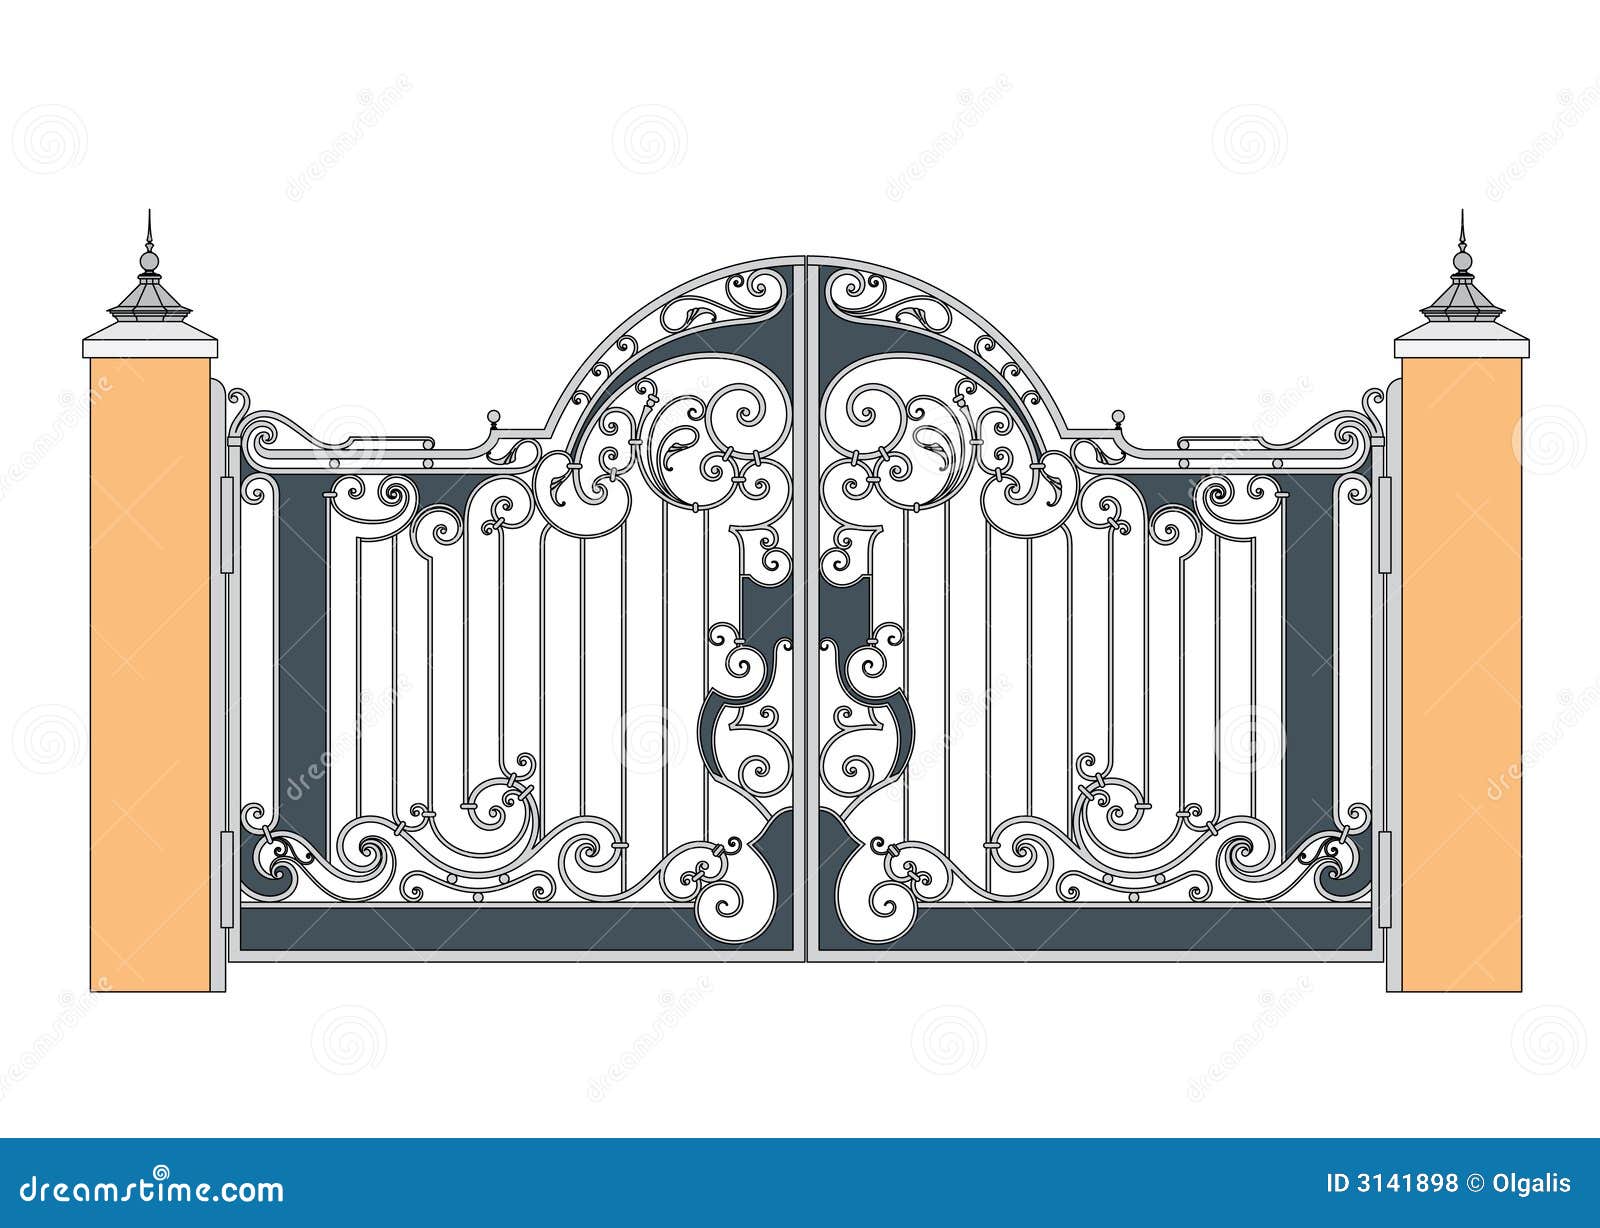 clipart iron gates - photo #34